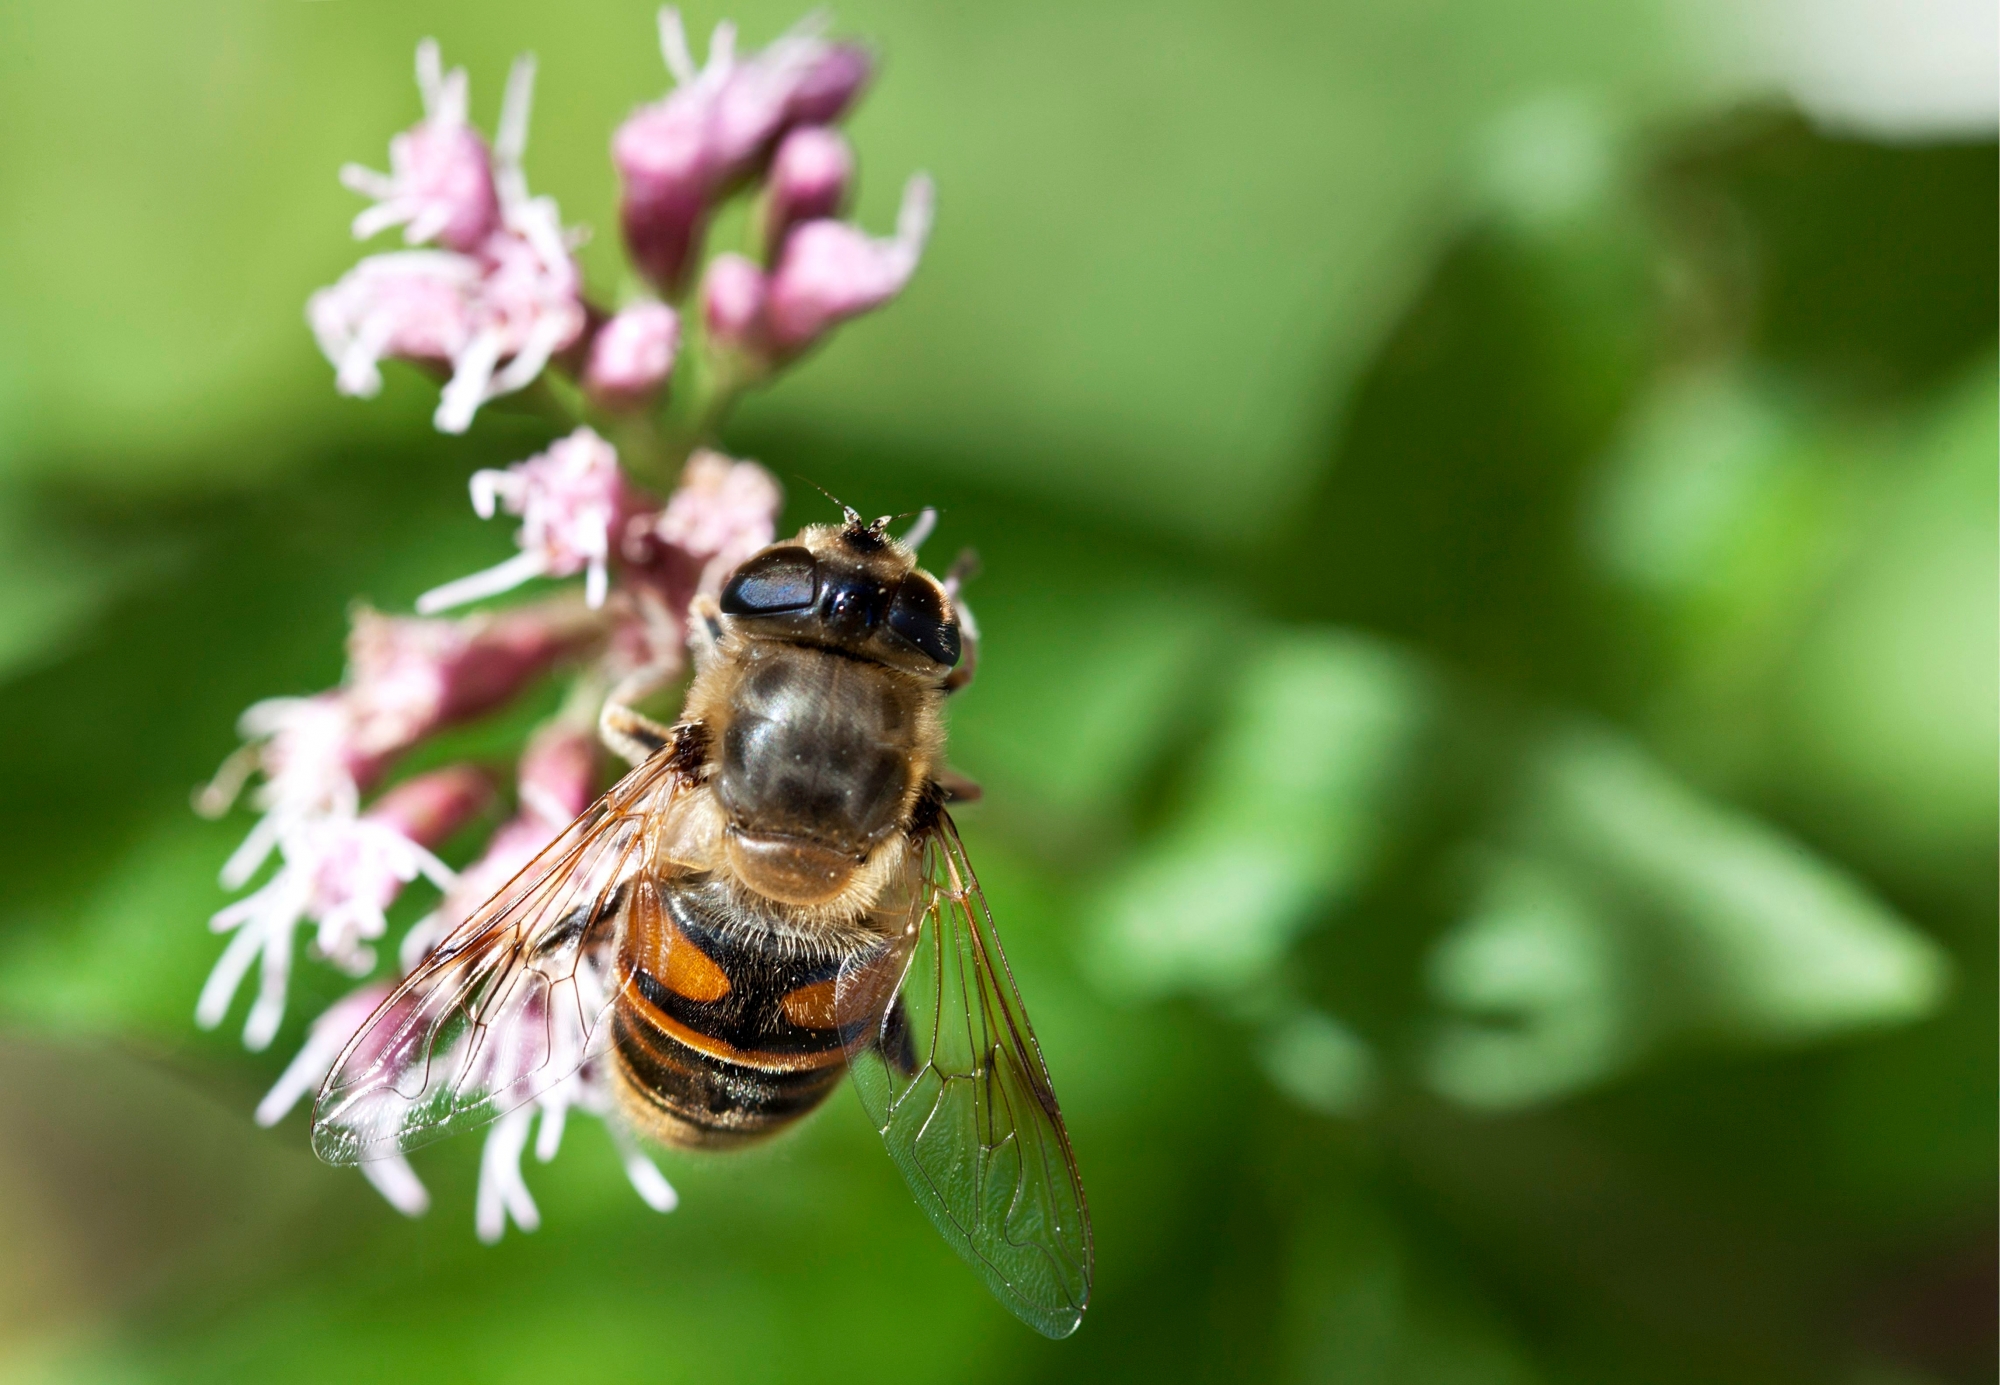 Sans la contribution des abeilles à la pollinisation, l’agriculture ne sera plus à même de nourrir la population.